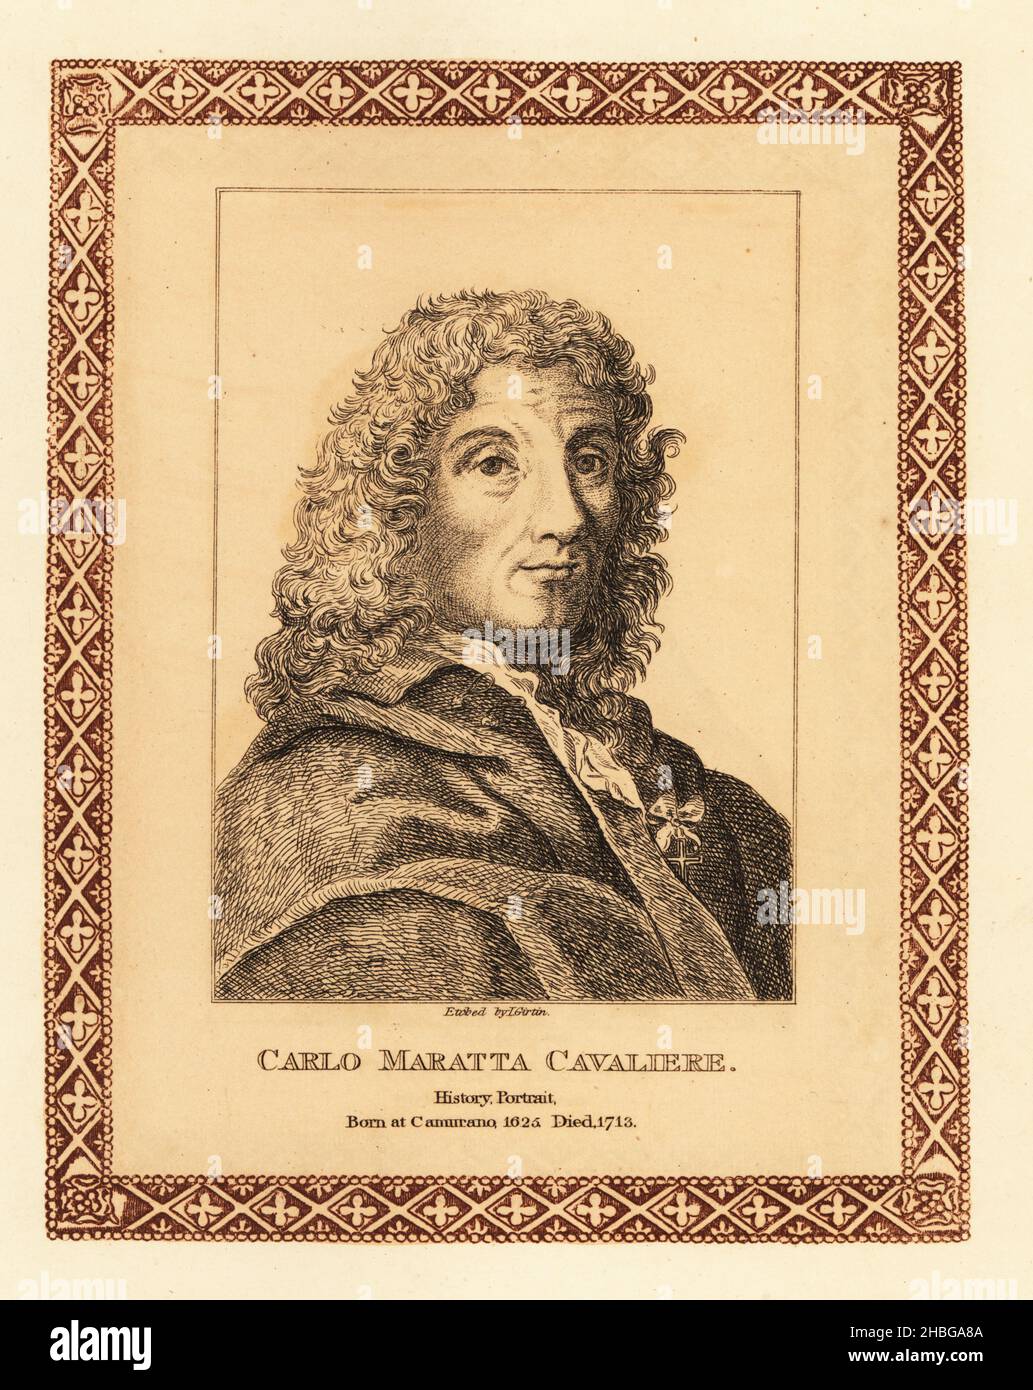 Carlo Maratta Cavaliere, de 1625 a 1713 años, pintor de historia italiana  conocido principalmente por sus pinturas realizadas de estilo clásico  barroco tardío. Grabado teñido dentro de un borde decorativo por John